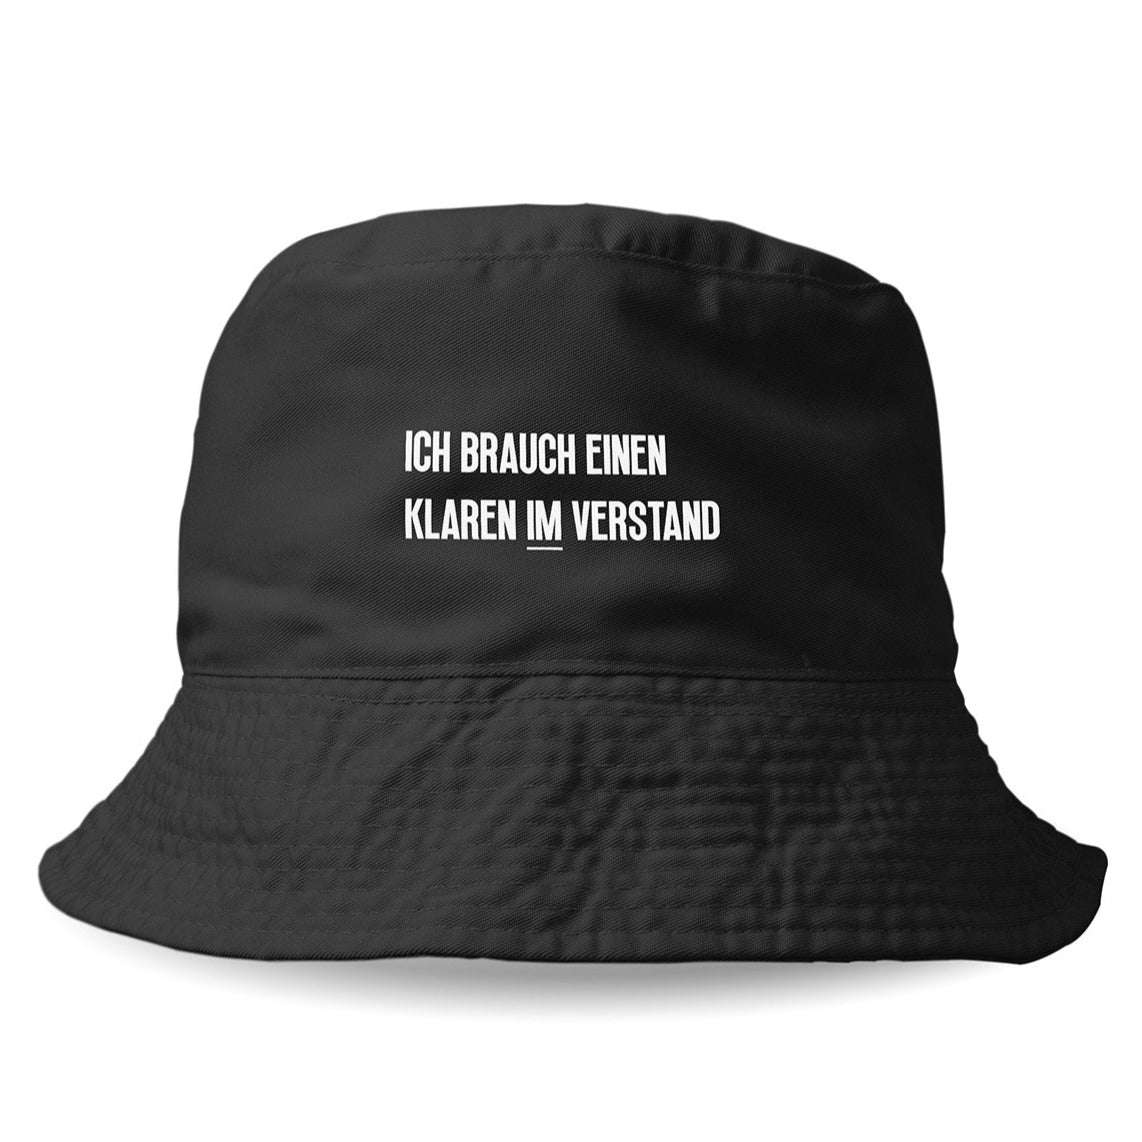 KLAREN IM VERSTAND - Bucket Hat